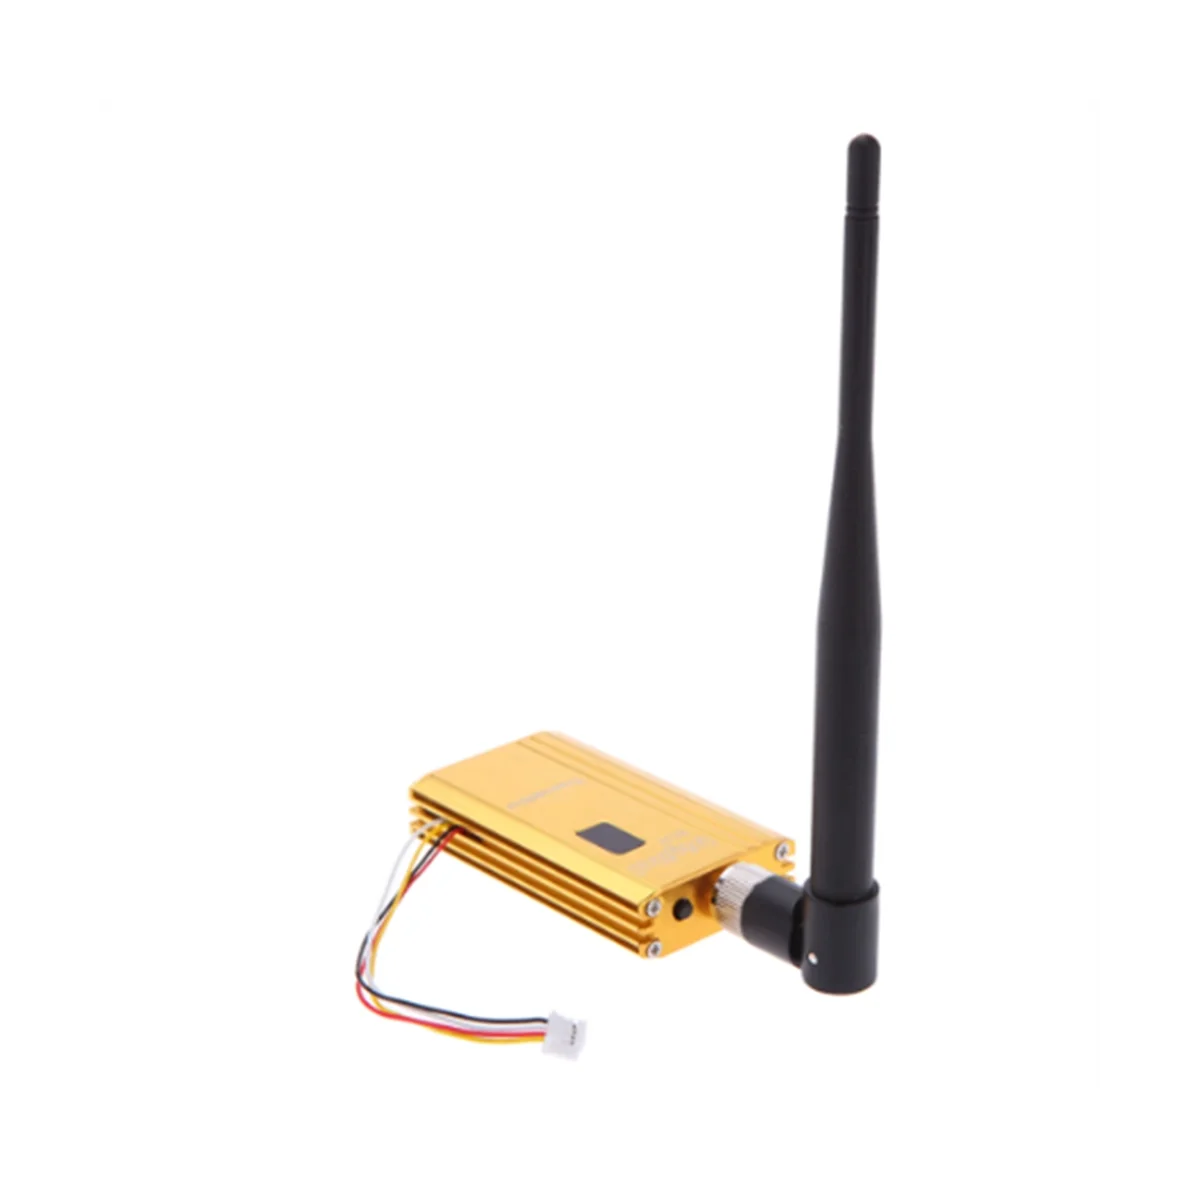 

FPV 1.2Ghz 1.2G 8CH 1500Mw Wireless AV Sender TV Audio Video Transmitter Receiver Combo for QAV250 250 FPV RC(C)